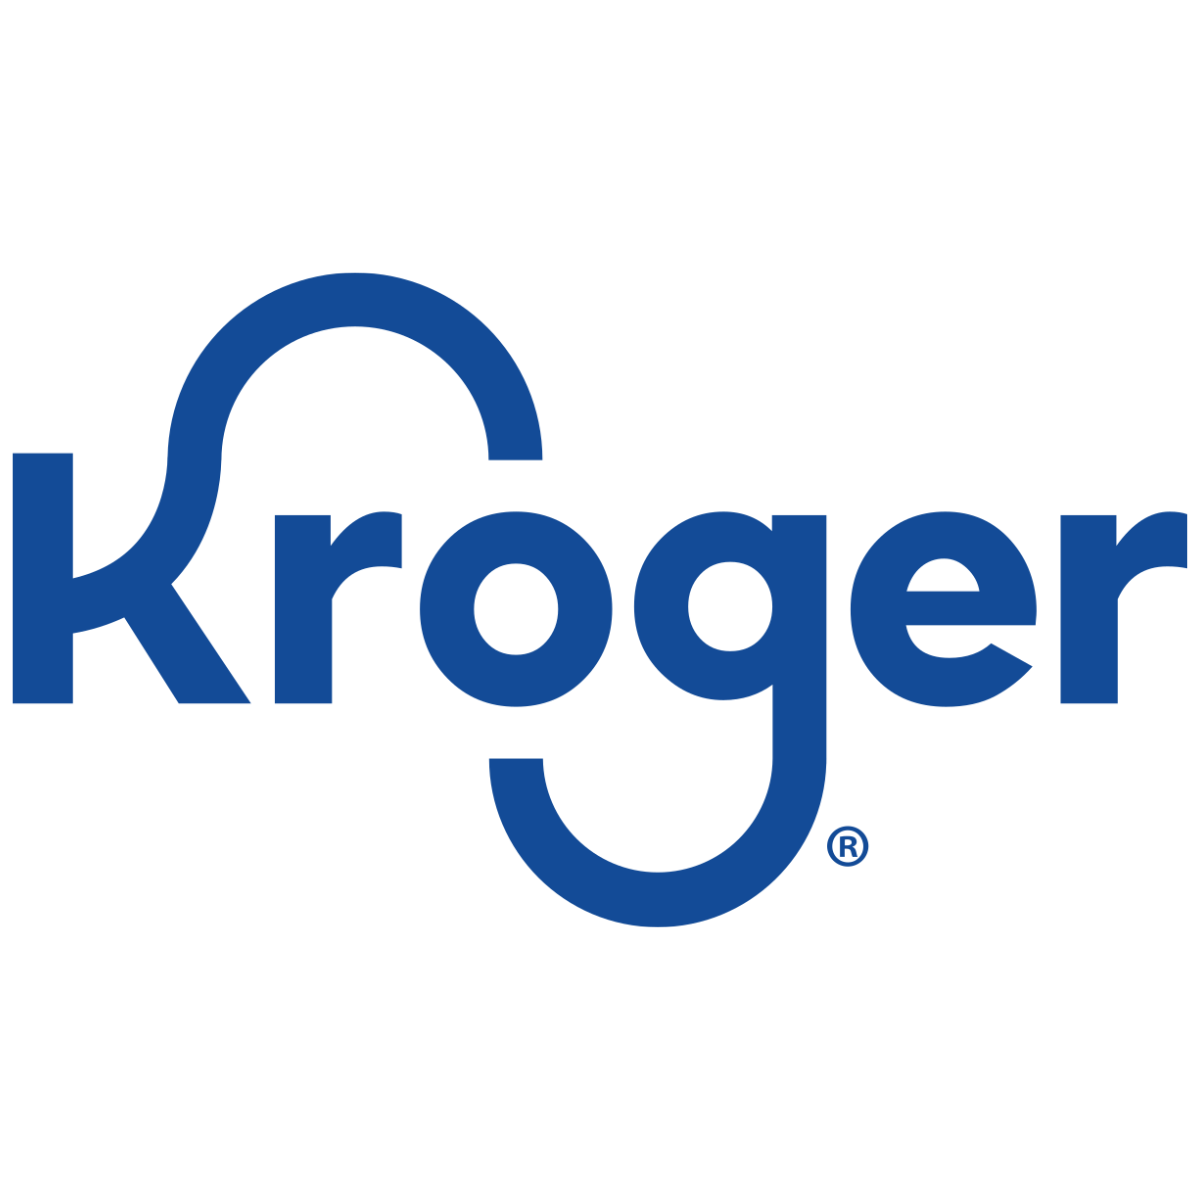 Kroger logo transparent